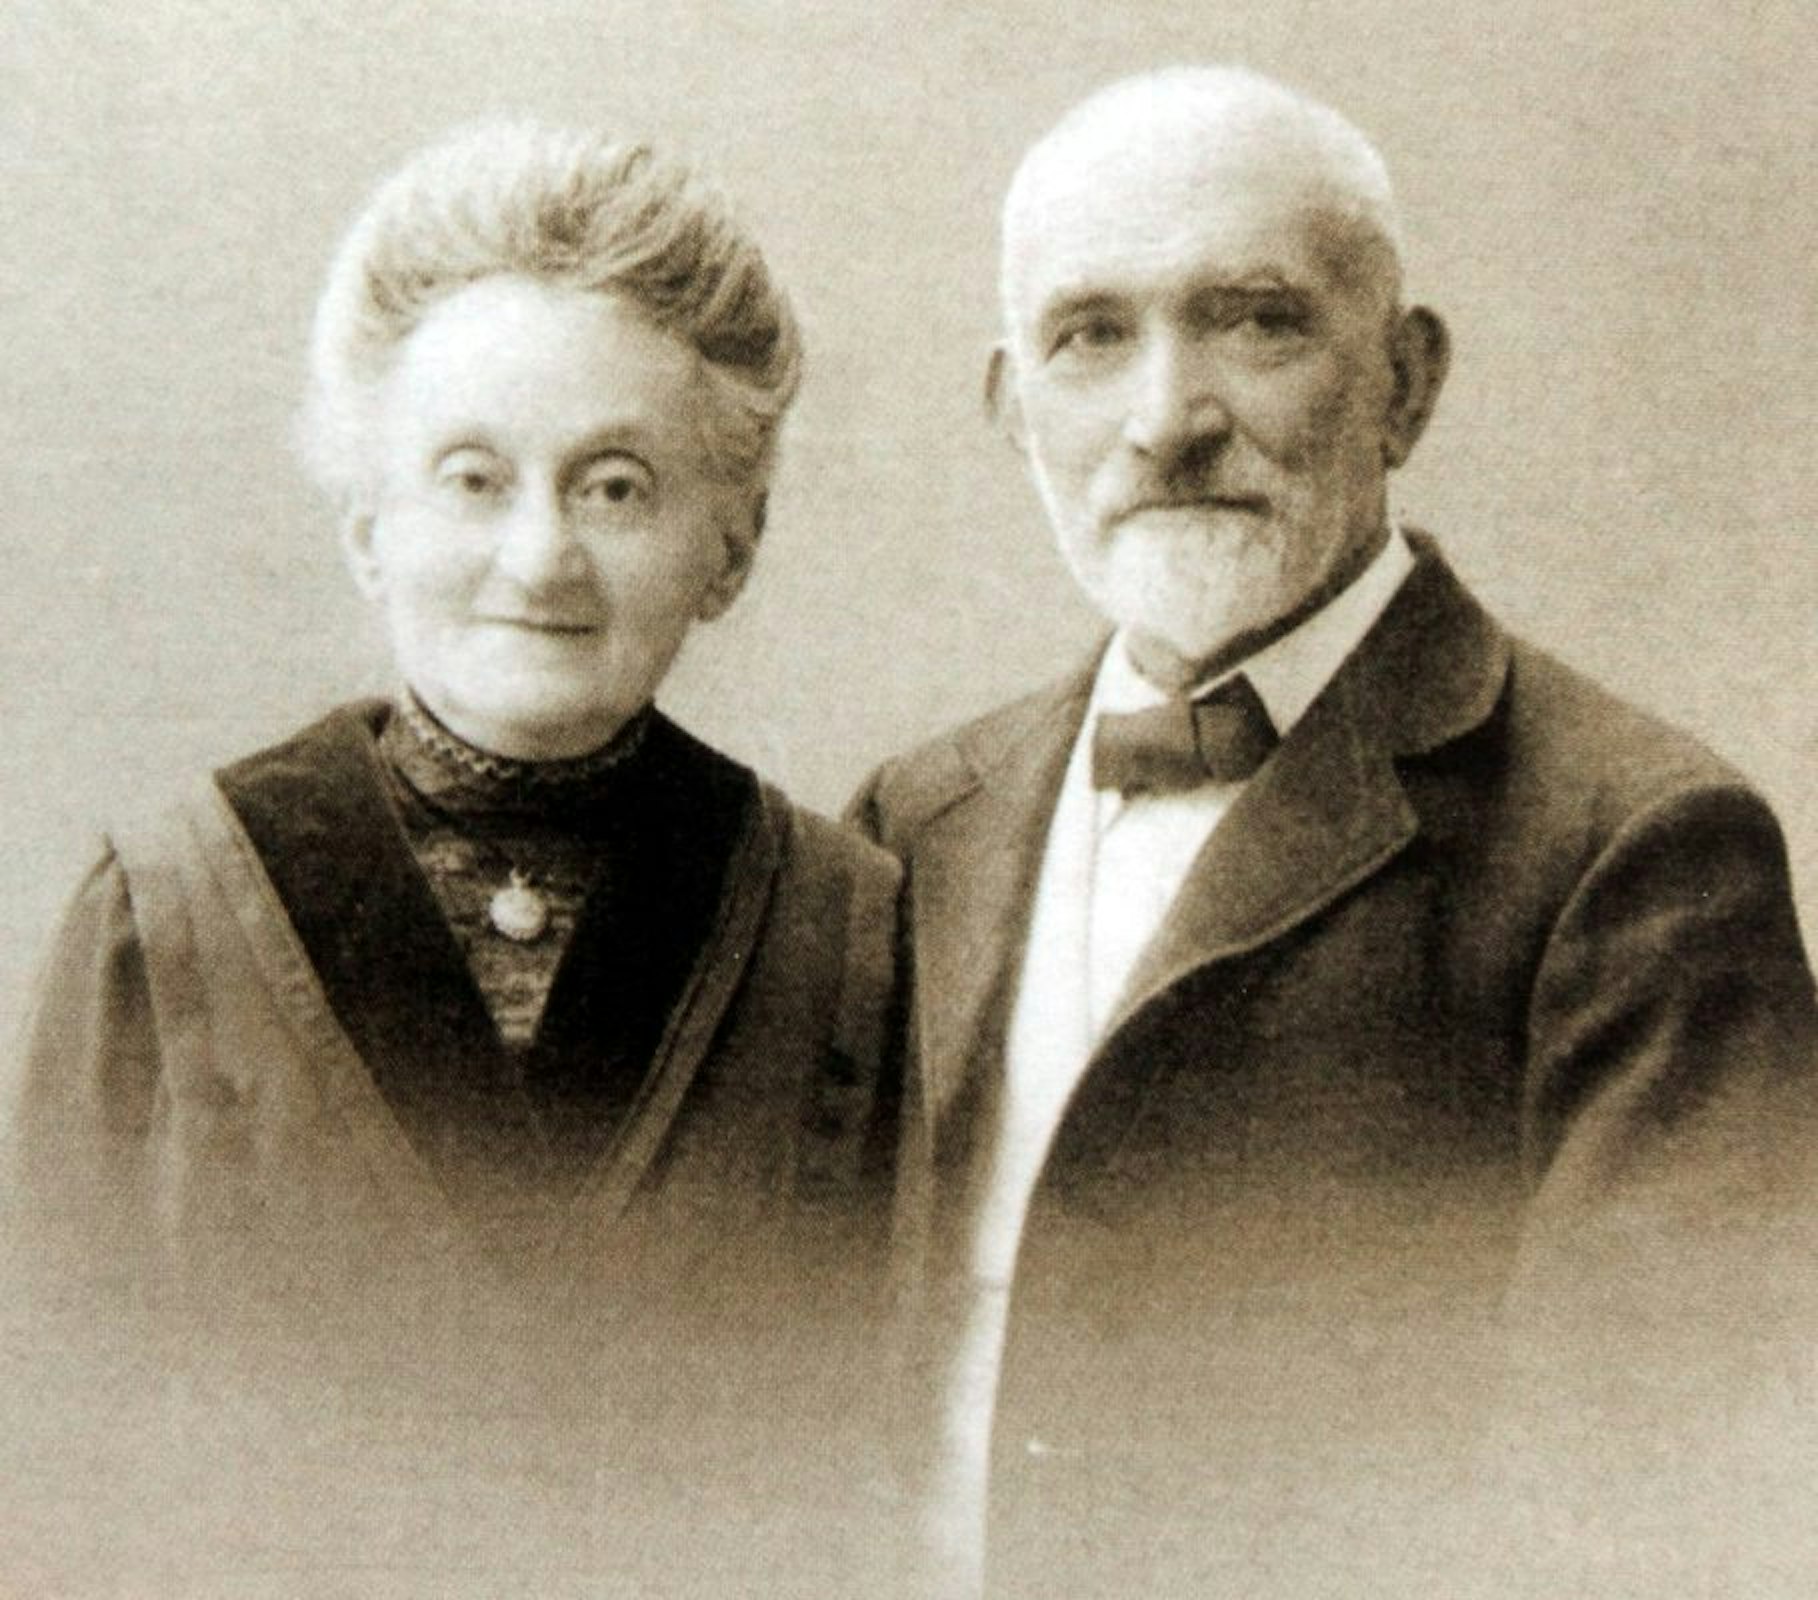 Um 1910 entstand die Aufnahme von Sabina und Marcus Menkel, die in Eitorf lebten und der Geistinger Synagogengemeinde angehörten. Ihre Gräber befinden sich auf dem jüdischen Friedhof in Geistingen.